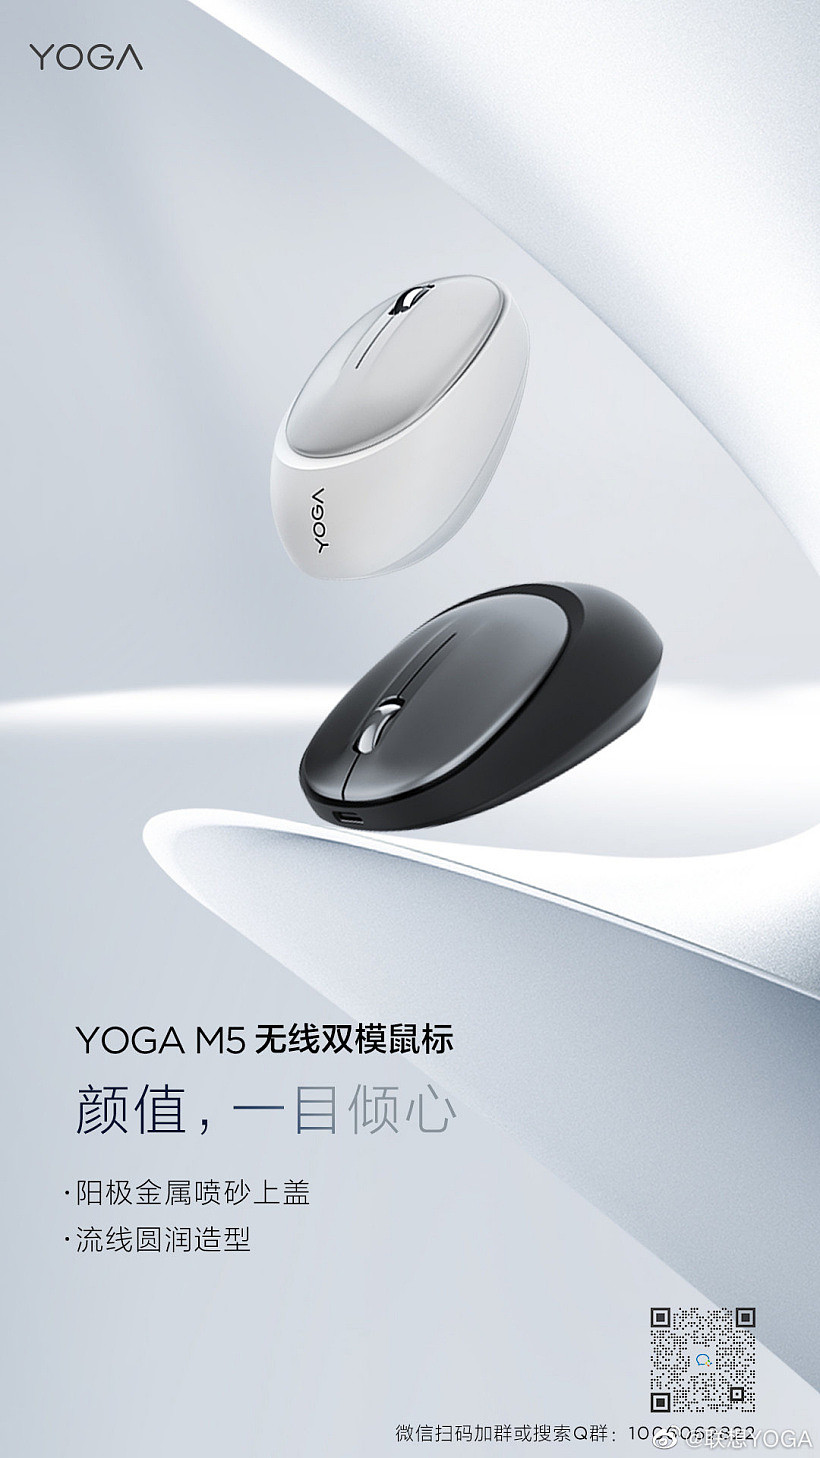 联想 YOGA M5 无线双模鼠标定价 99 元，12 月 30 日预售 - 1